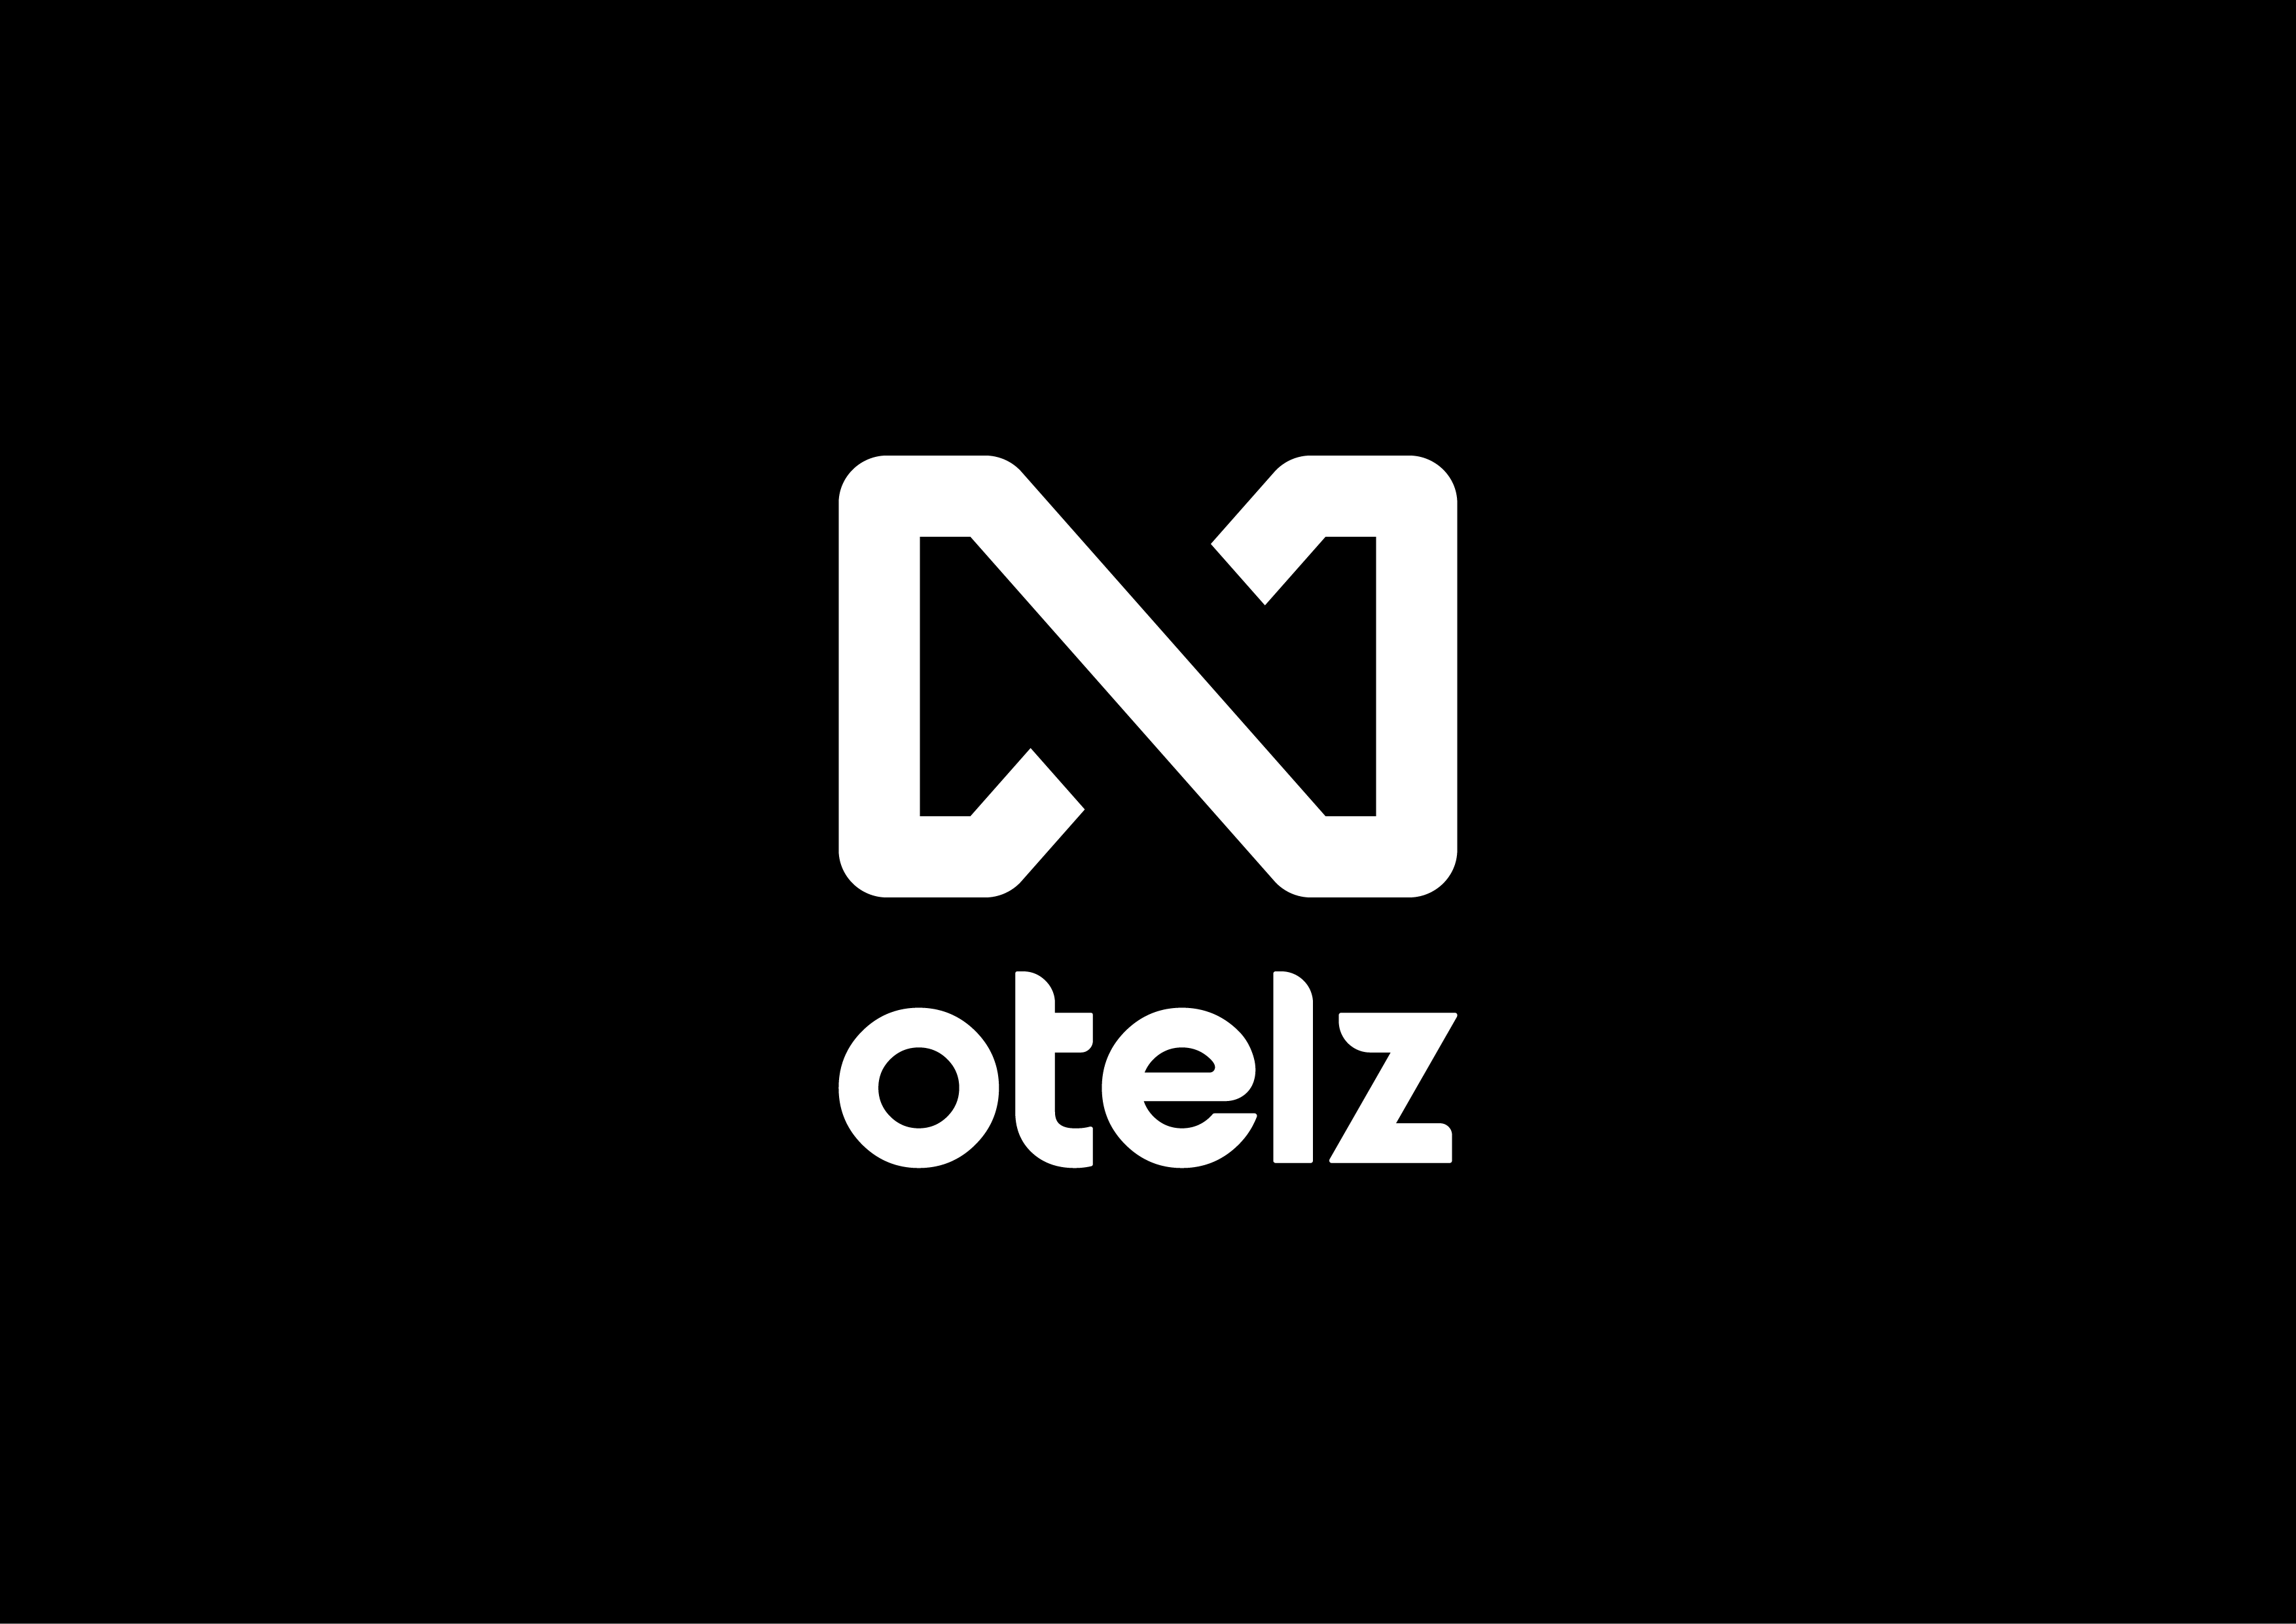 otelz_logo_black